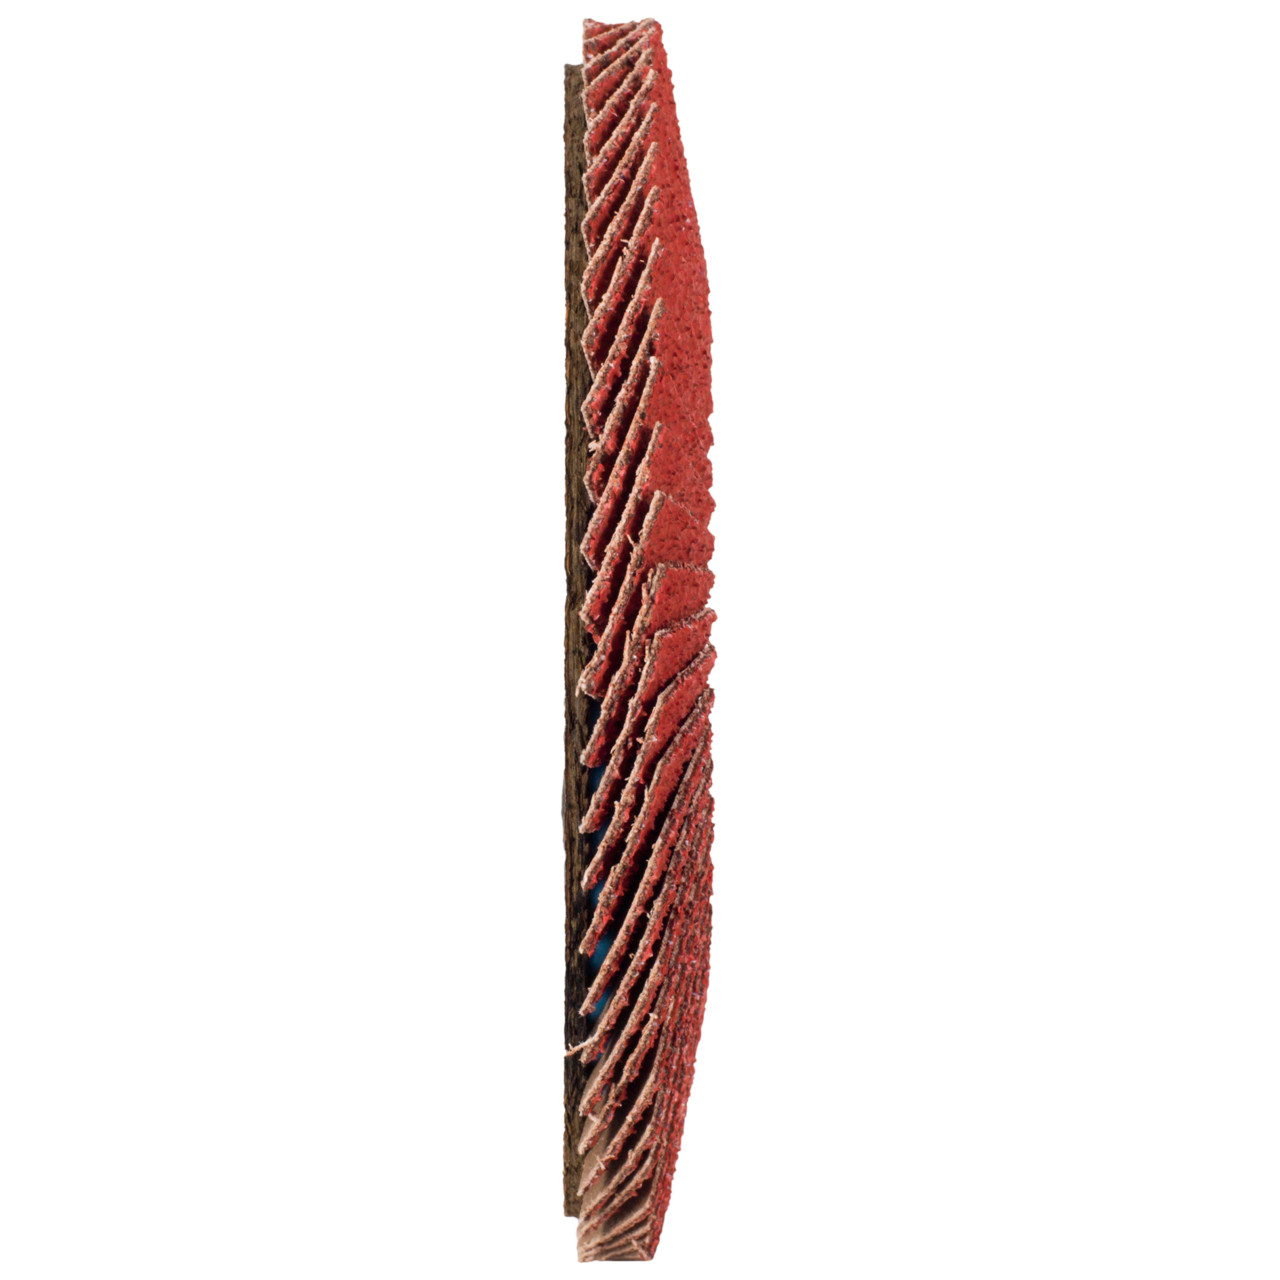 Tyrolit Gekartelde borgring DxH 178x22,23 CERABOND gekartelde borgring voor roestvrij staal, P80, vorm: 28A - rechte versie (glasvezeldragerhuisversie), Art. 34166184